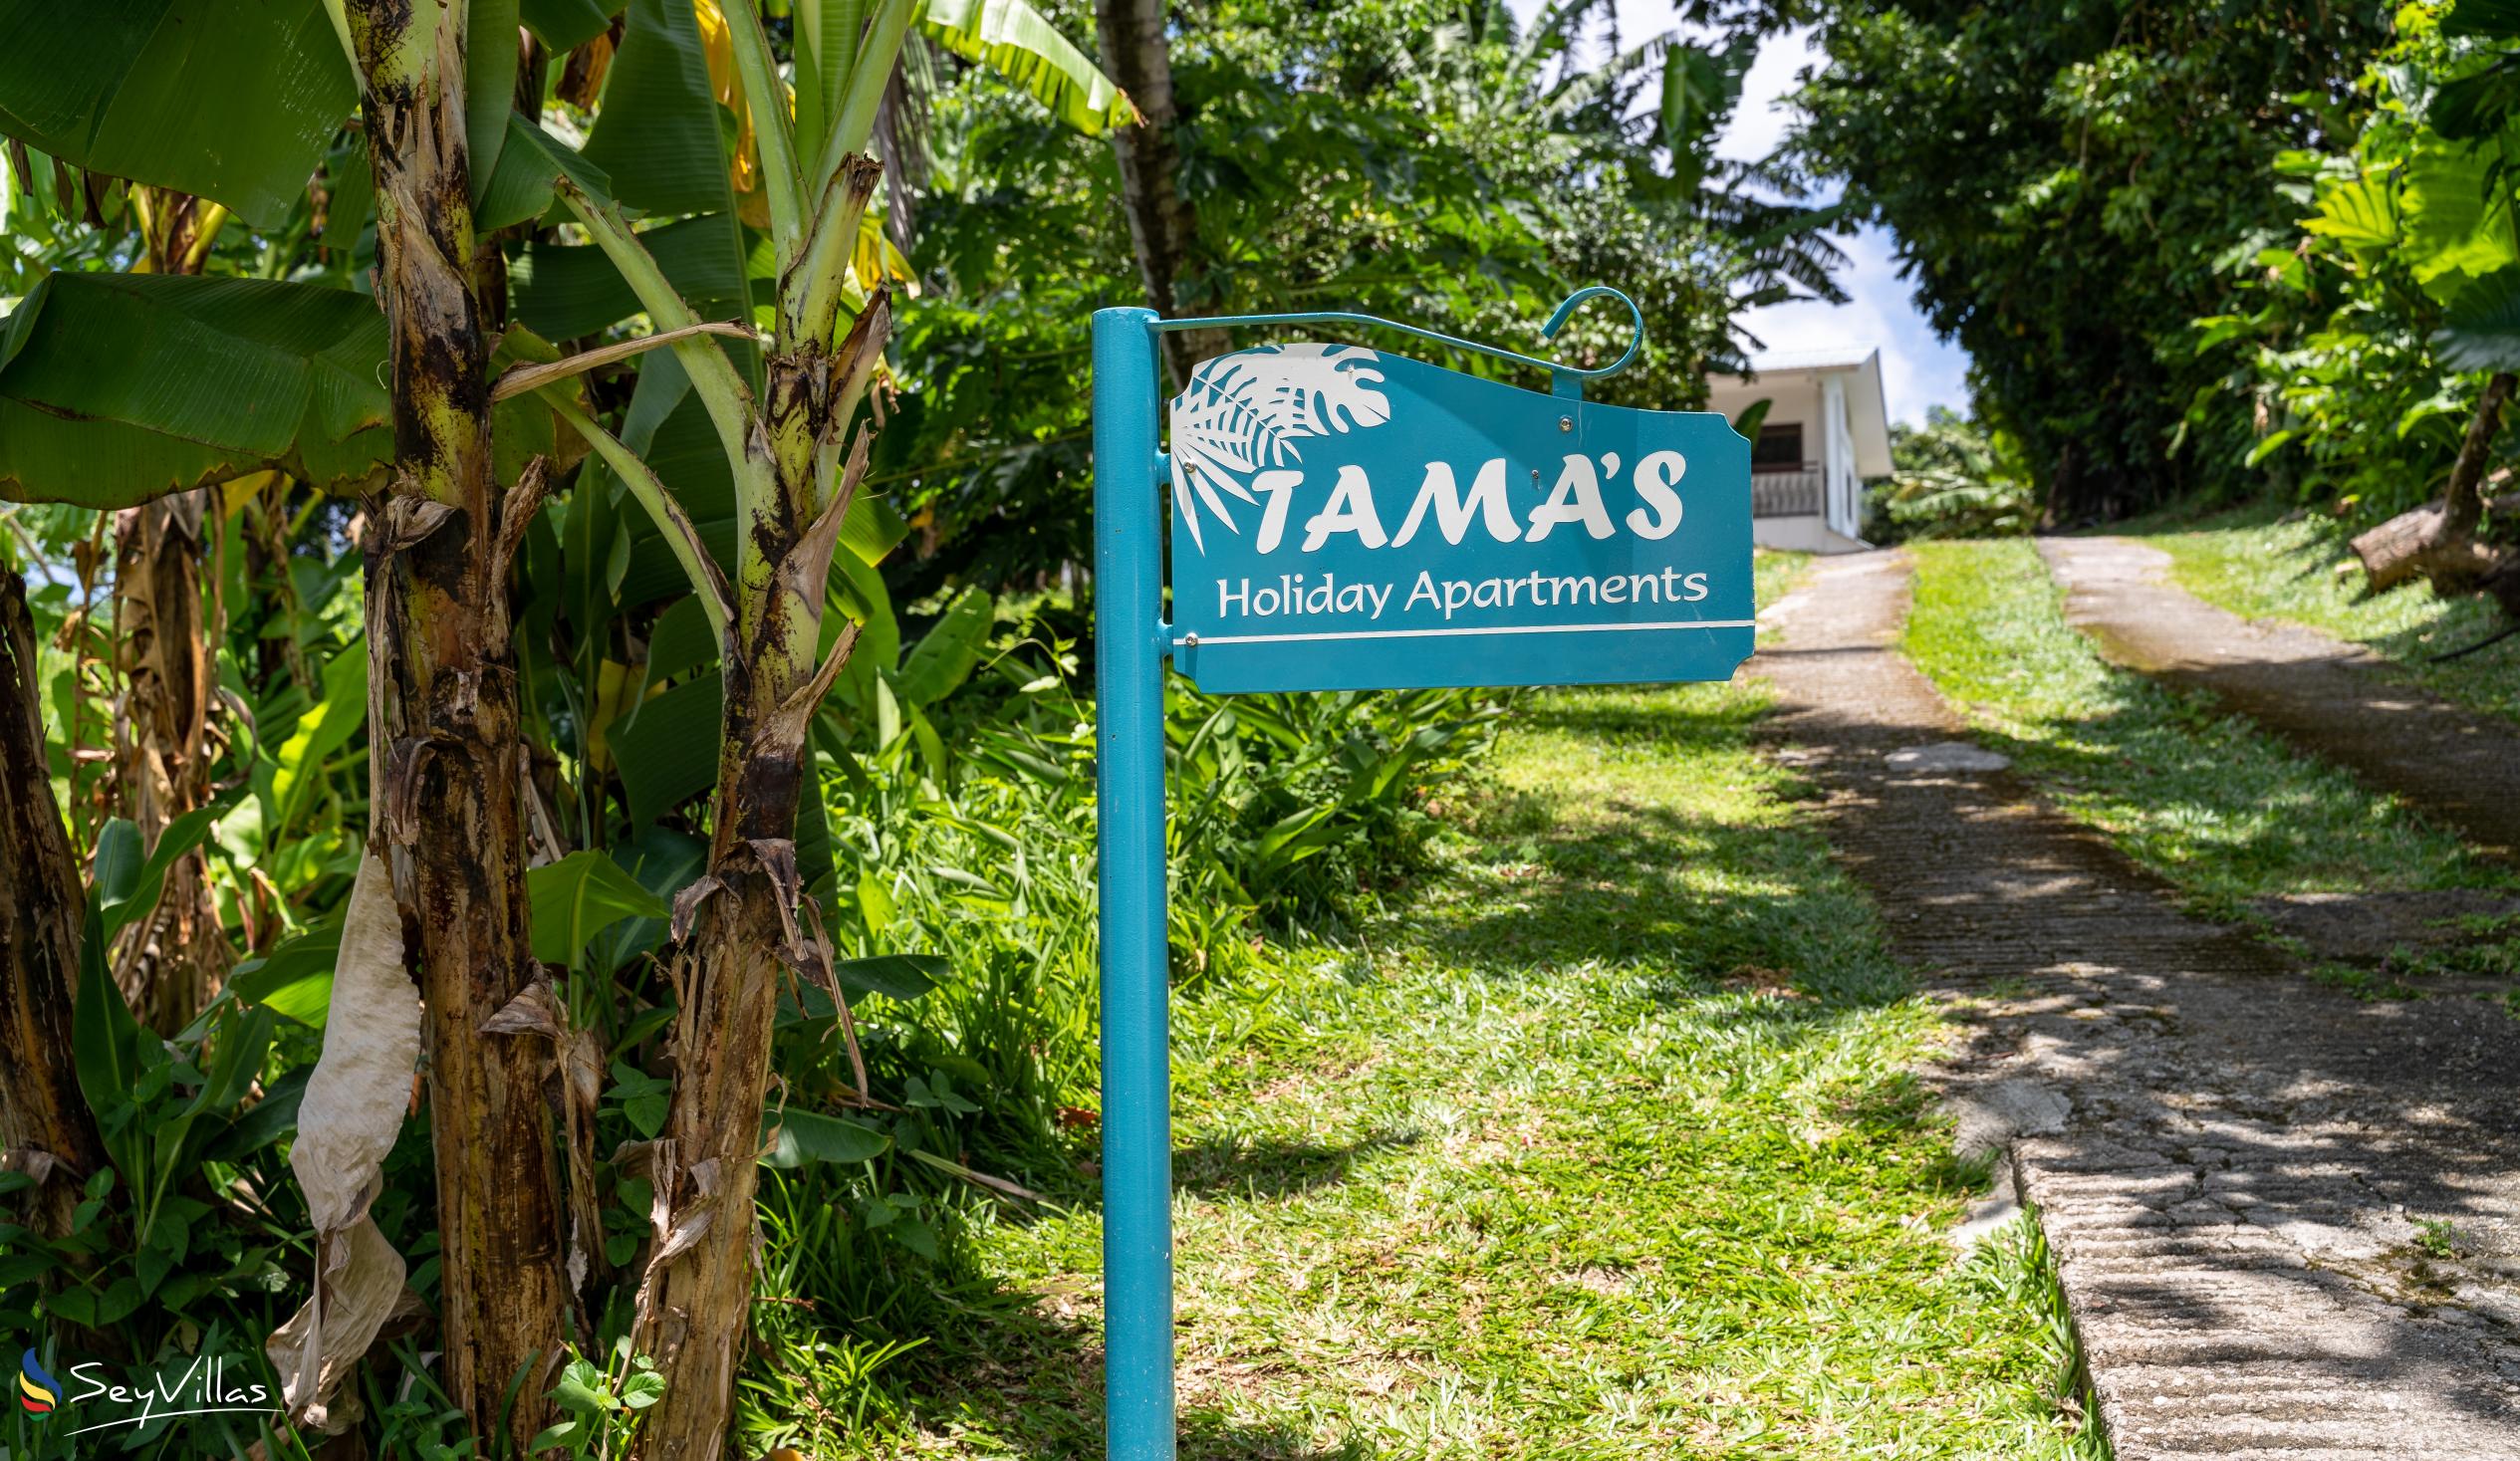 Foto 22: Tama's Holiday Apartments - Location - Mahé (Seychelles)